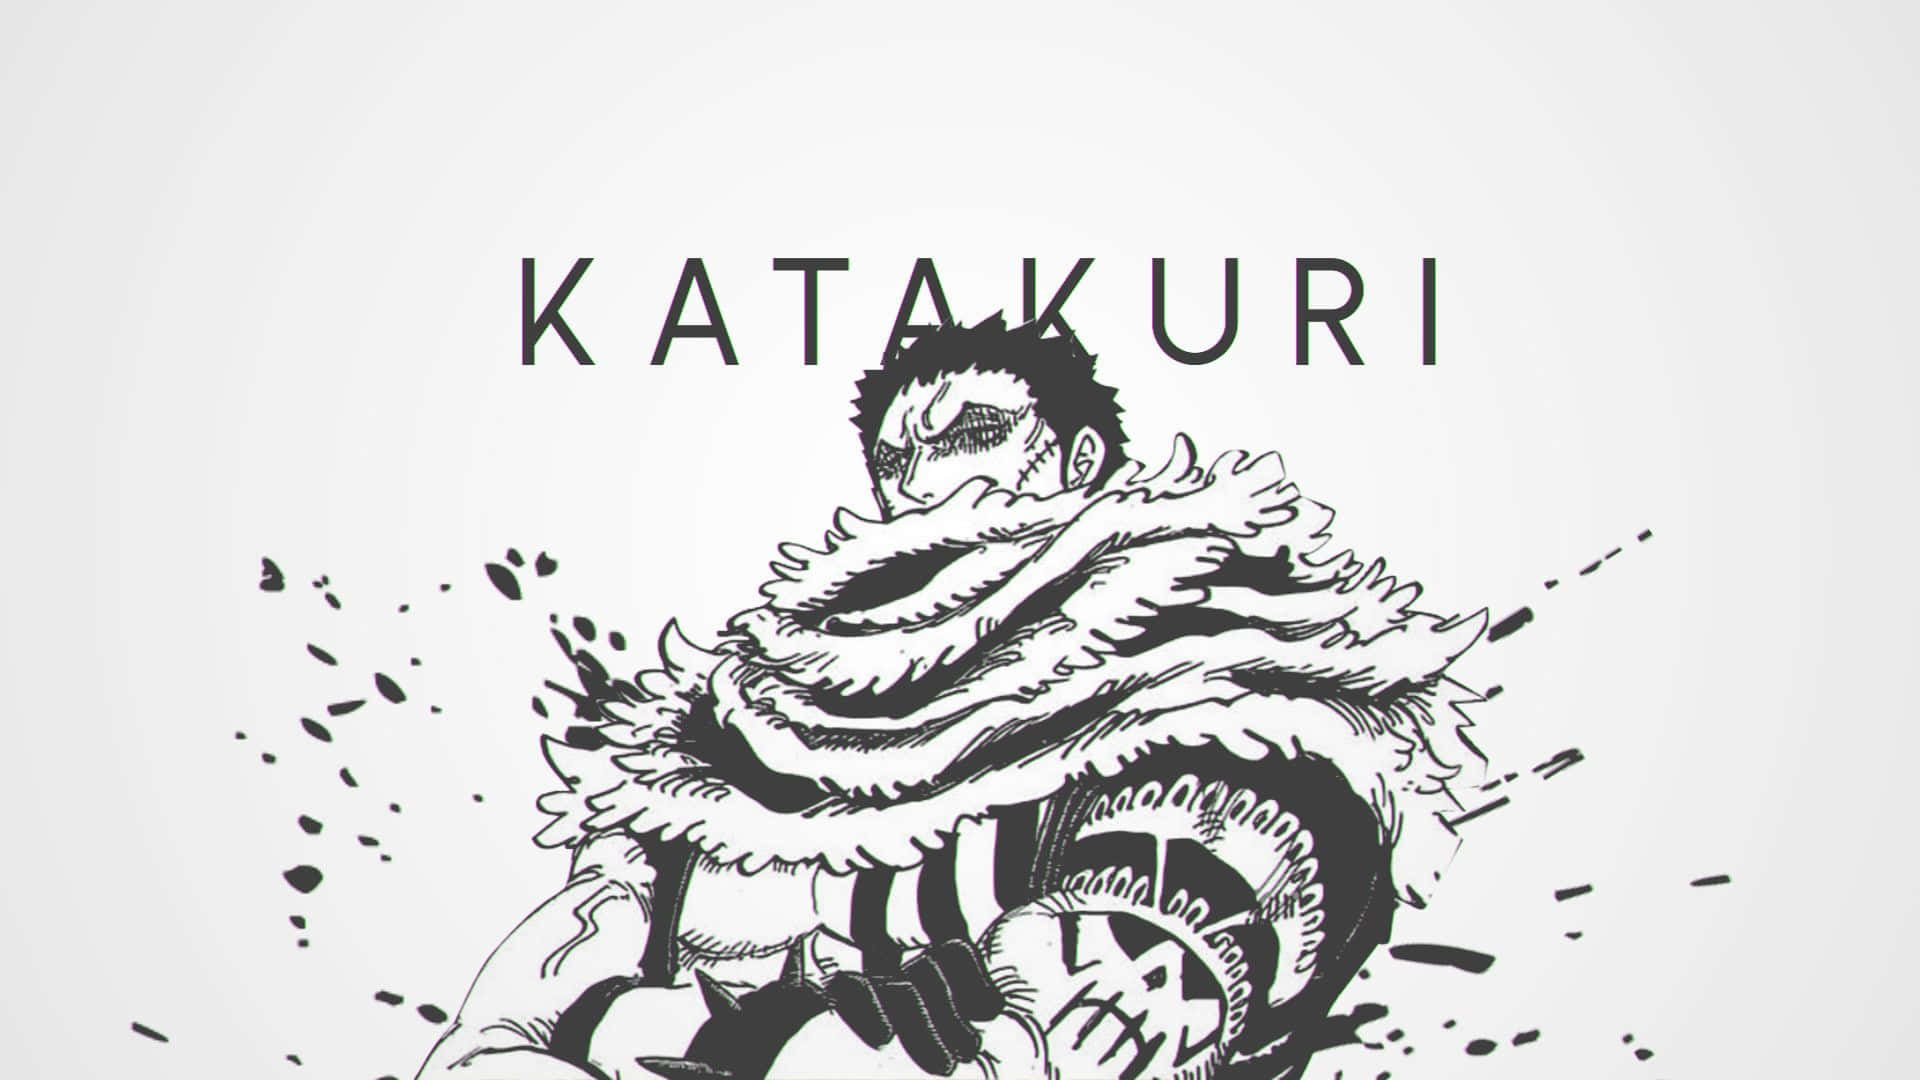 Drawing Luffy vs Katakuri _ One Piece 